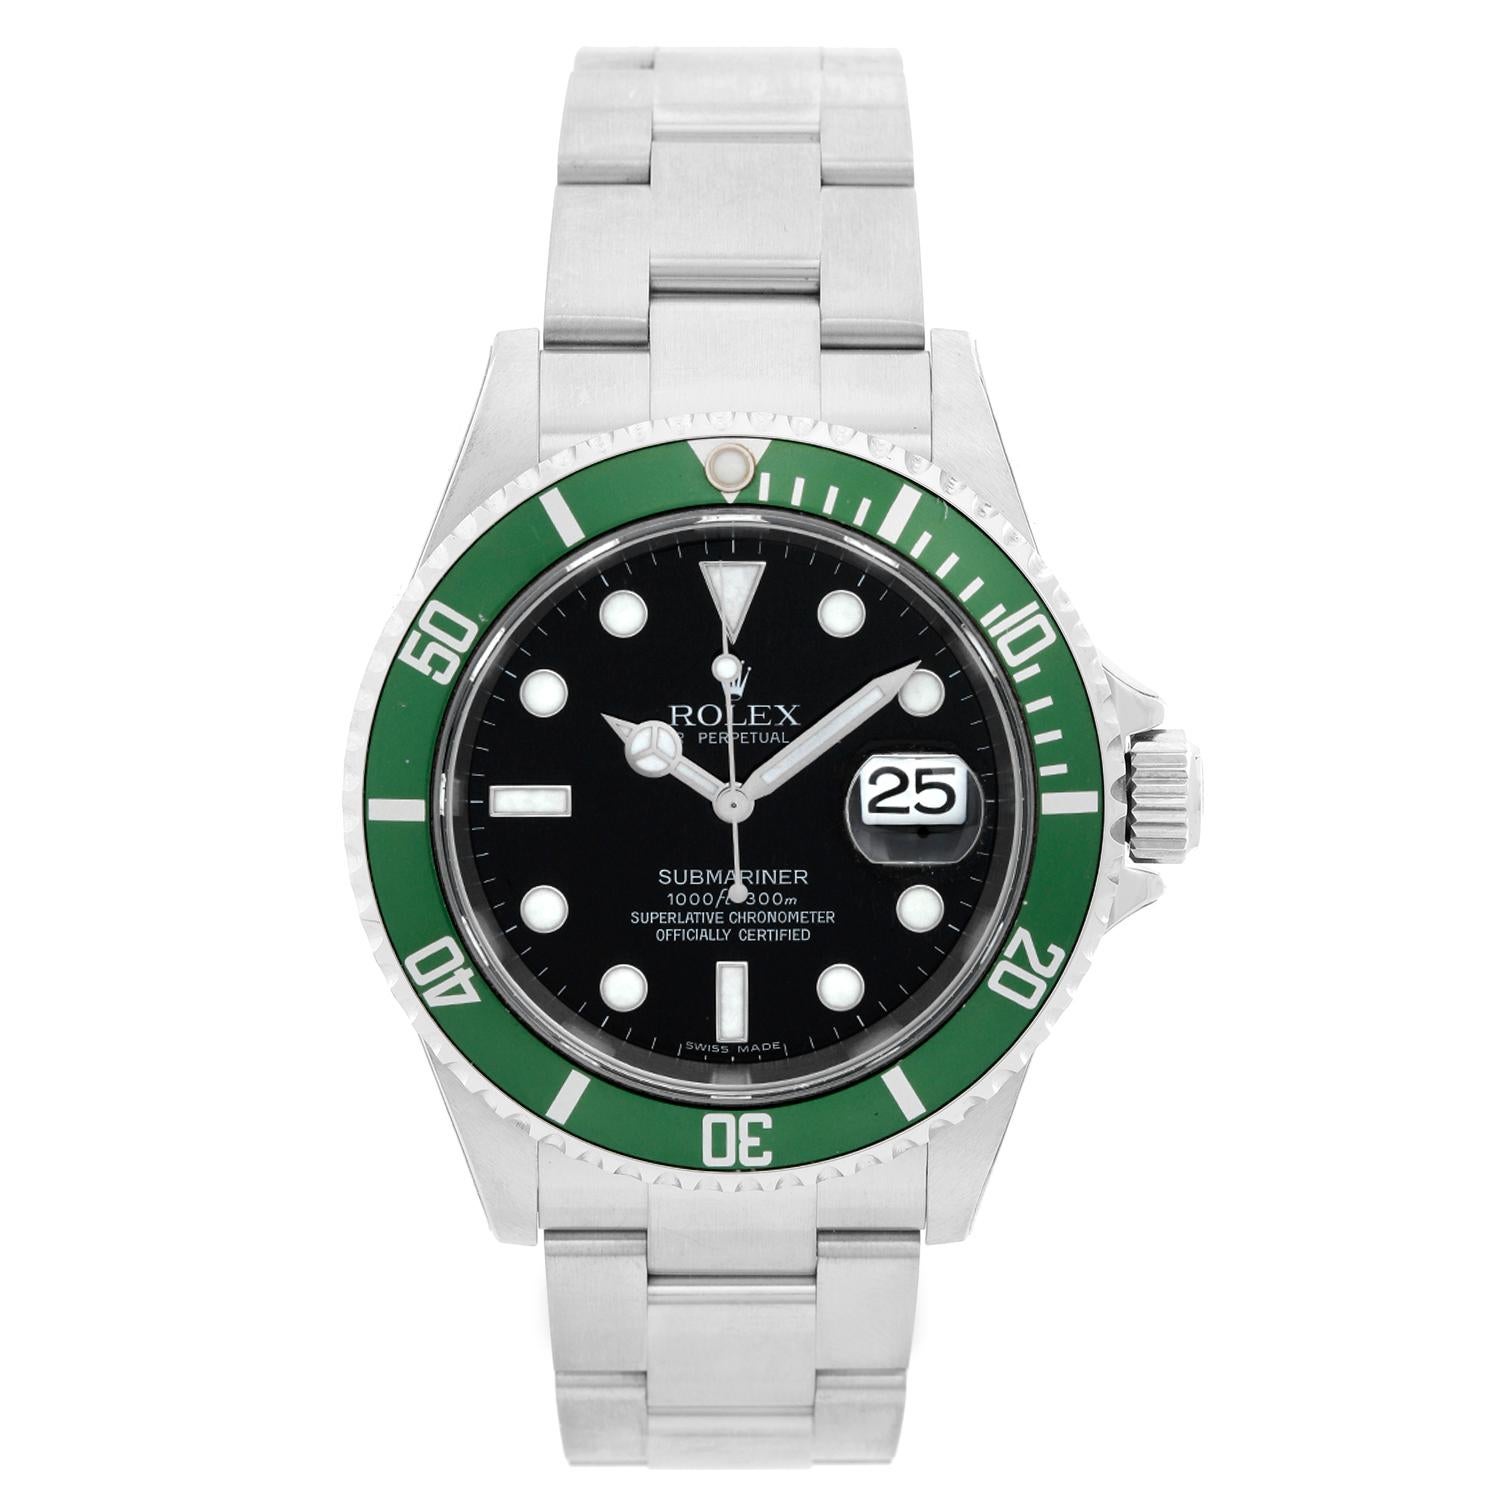 Rolex Submariner 16610 Stainless Steel Men's Watch "Kermit"